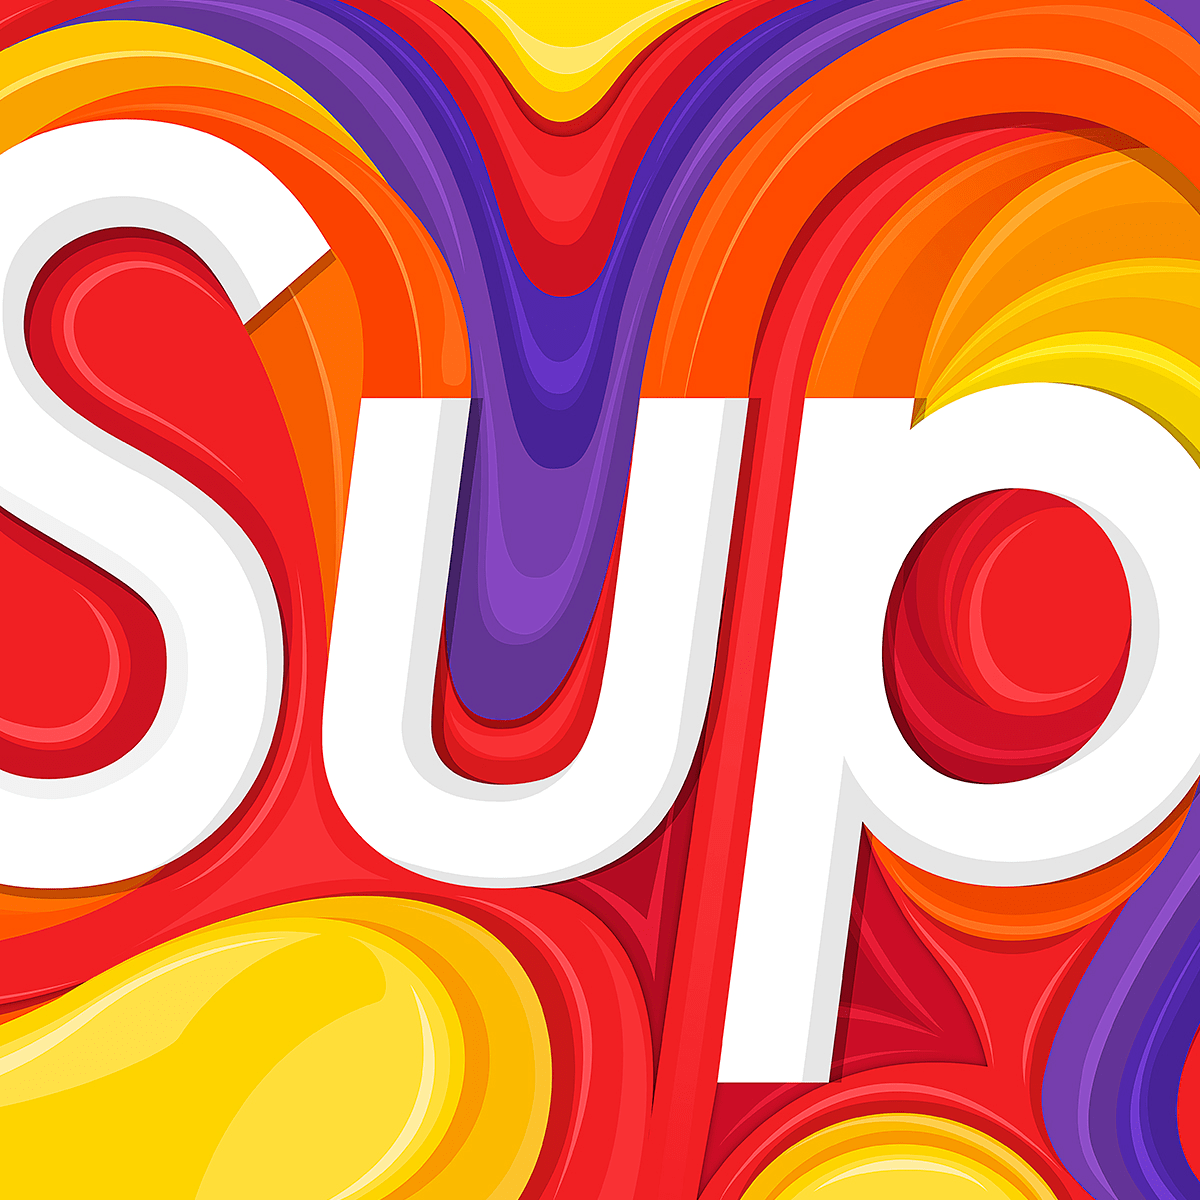 15 Best Supreme LV ideas  supreme wallpaper, hypebeast wallpaper, supreme  iphone wallpaper